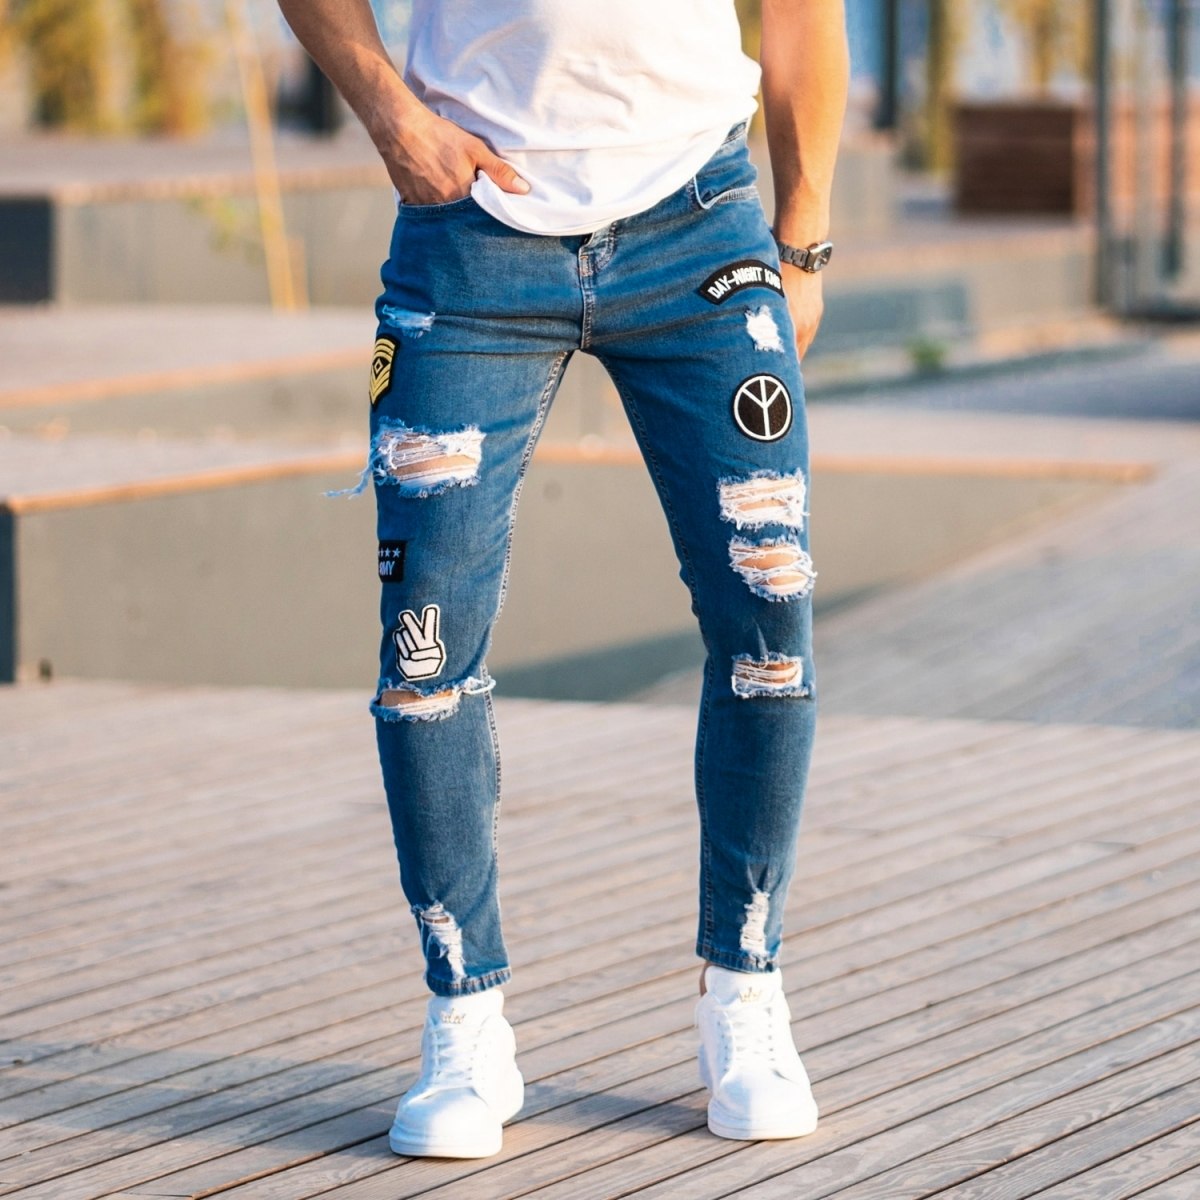 Herren Jeans mit Rissen und Strickdetails in blau - 1